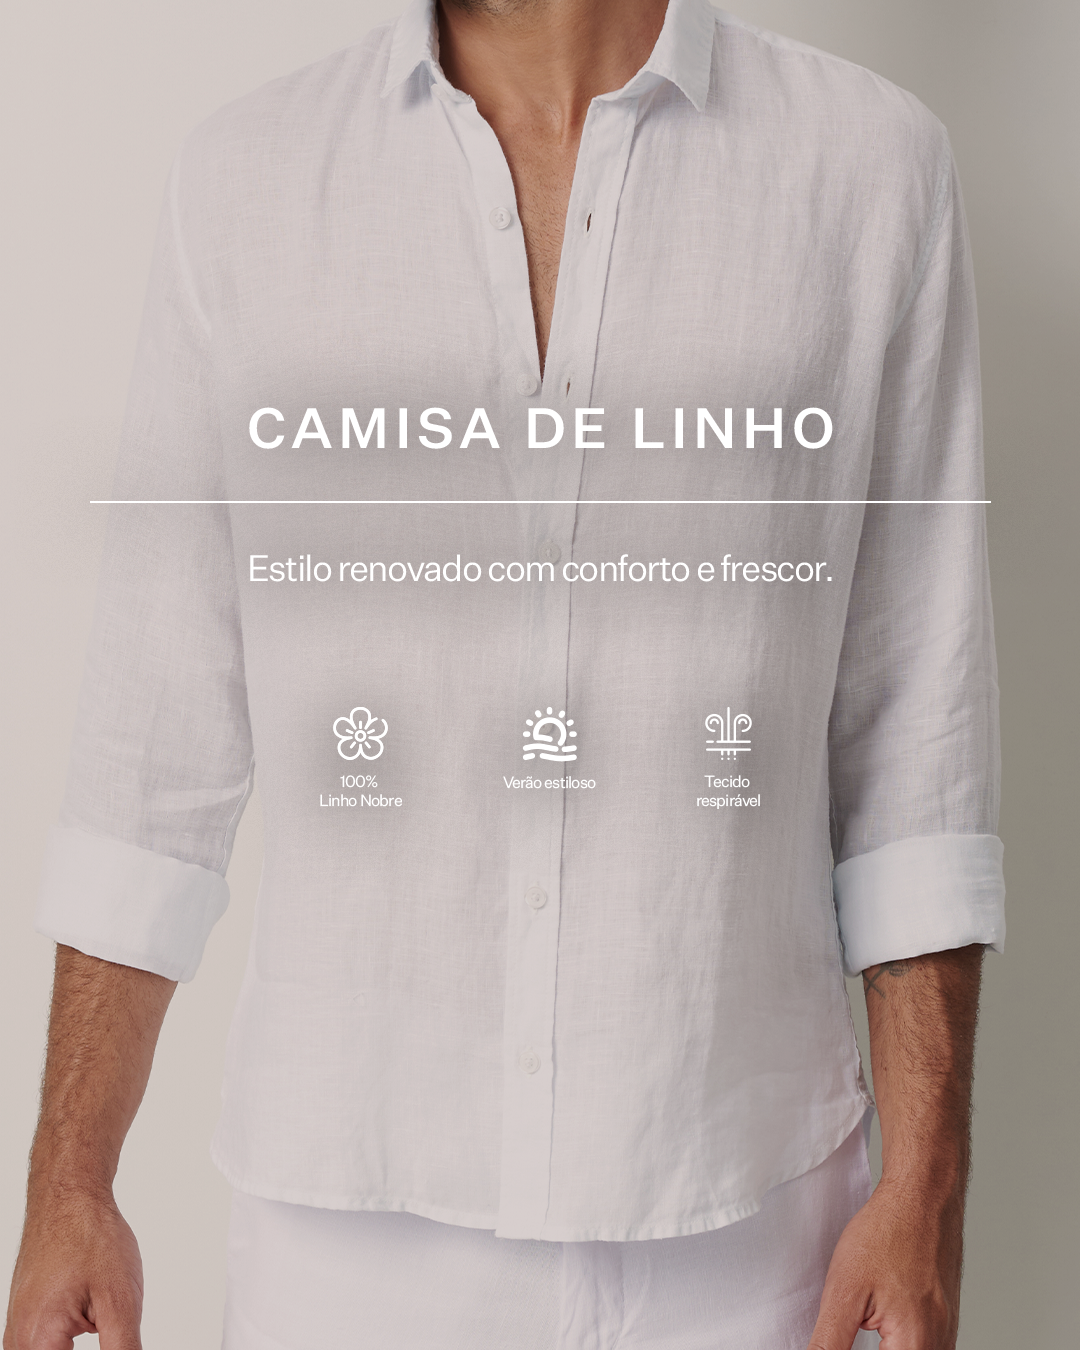 Banner_camisa_de_linho-_Mobile.png